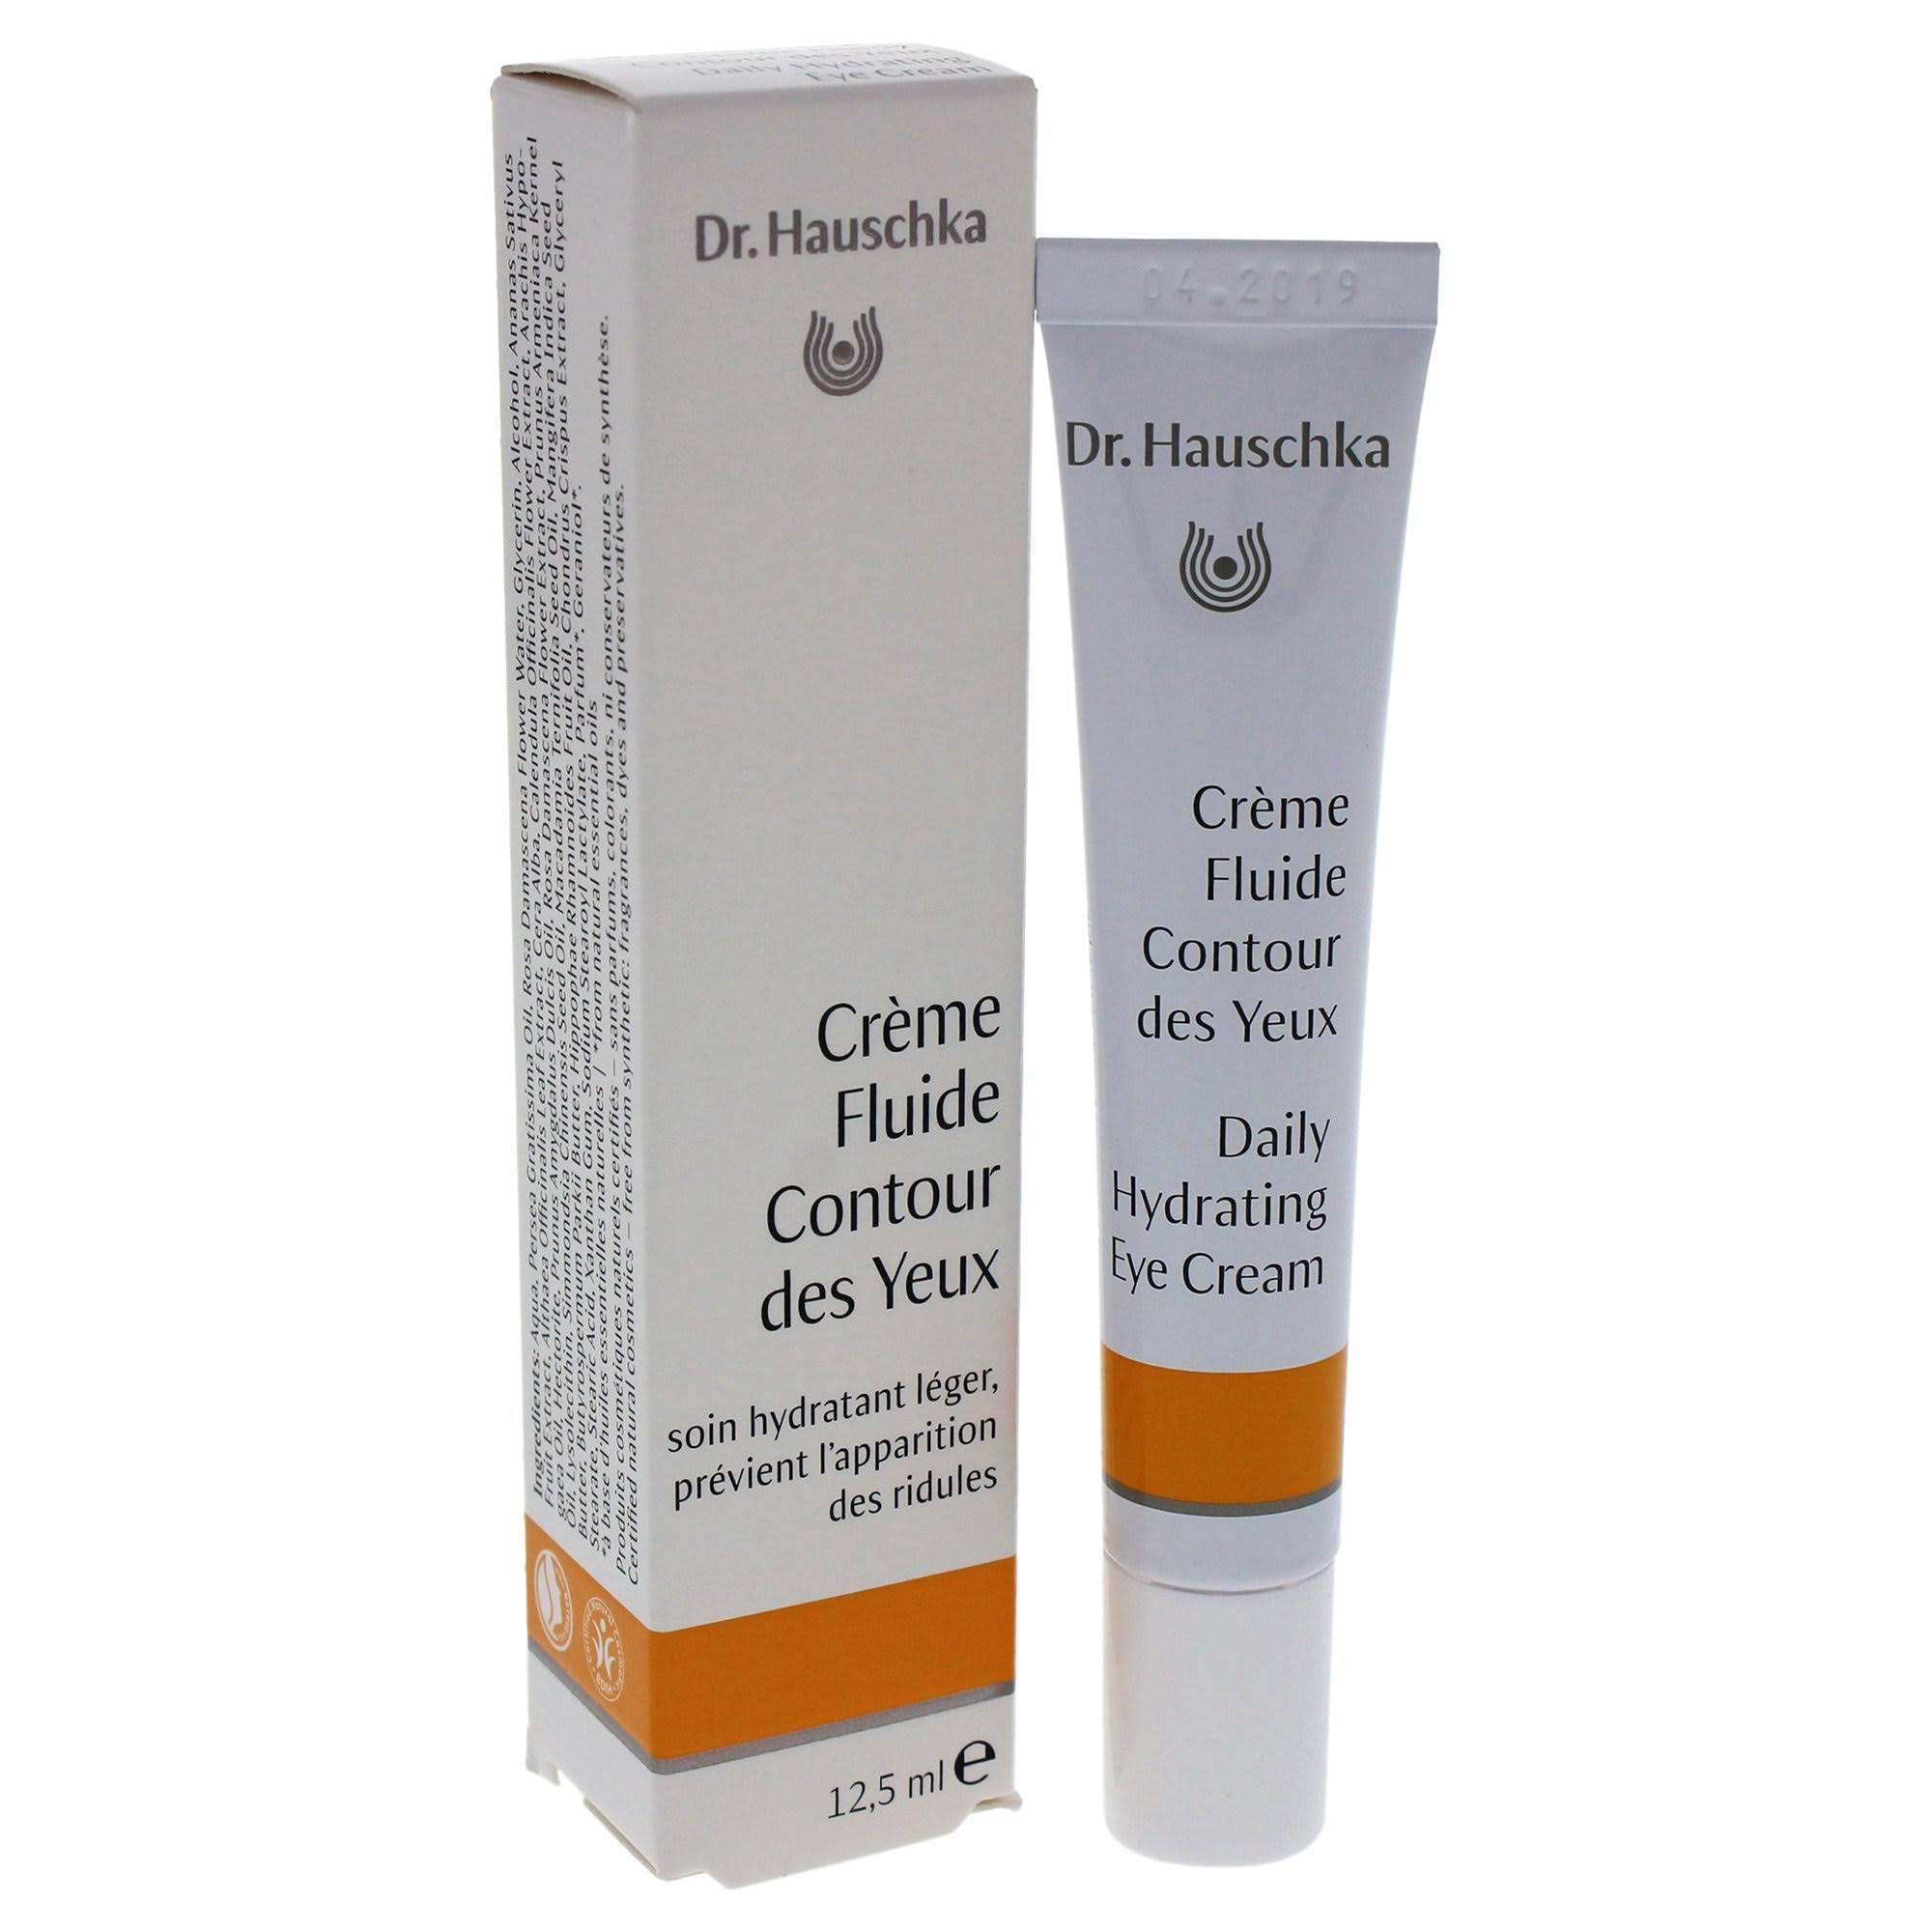 Dr Hauschka Daily Hydrating Eye Cream - 12.5ml